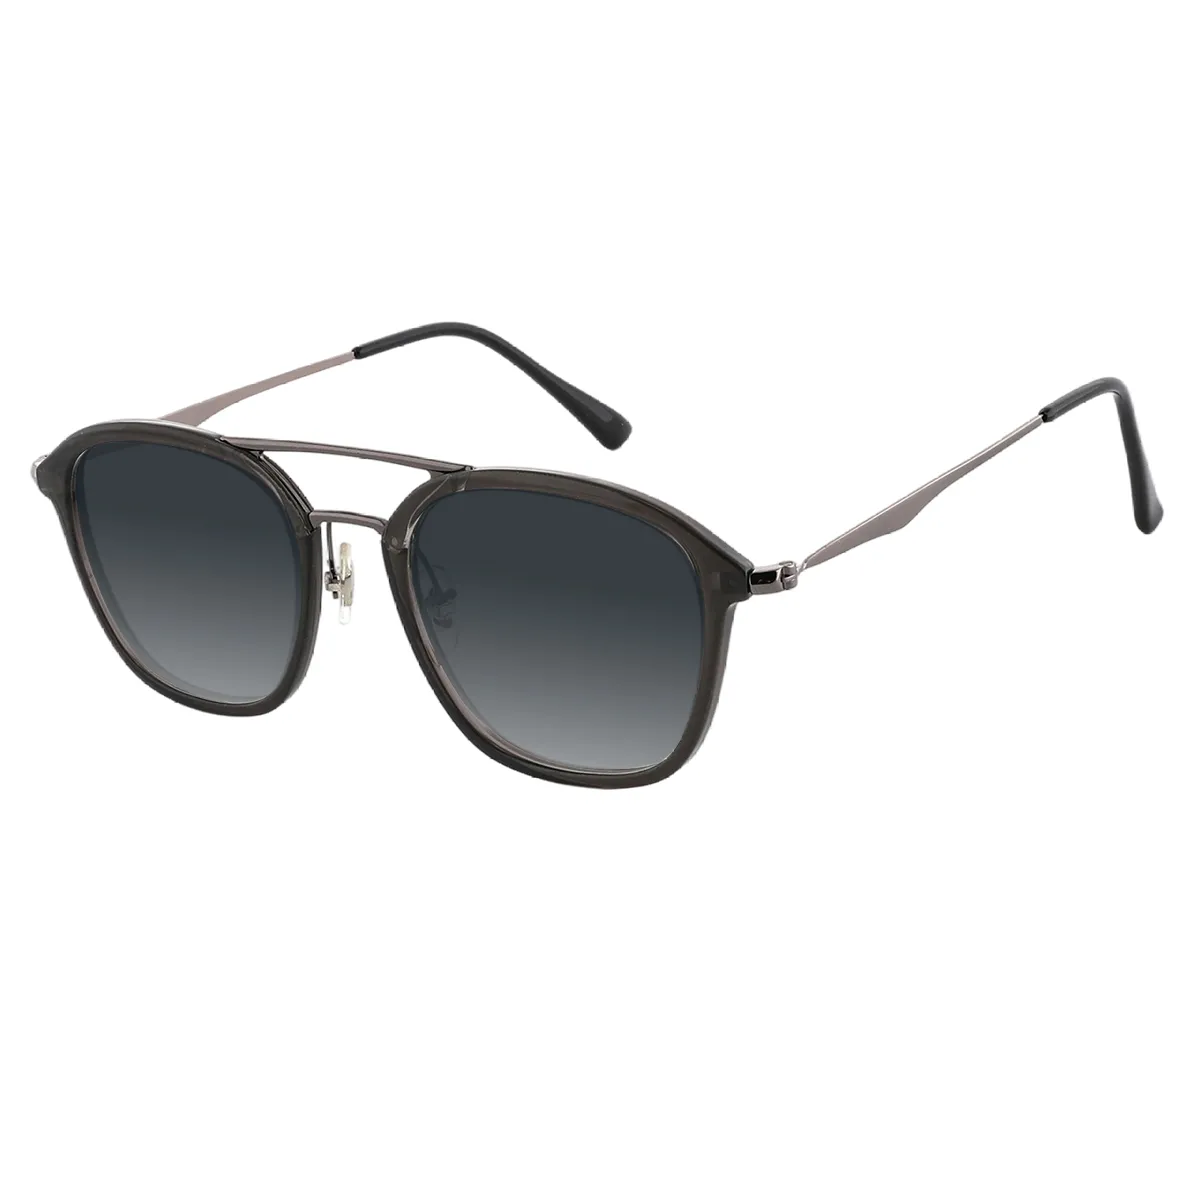 Yeager - Aviator Gunmetal Sunglasses for Men & Women